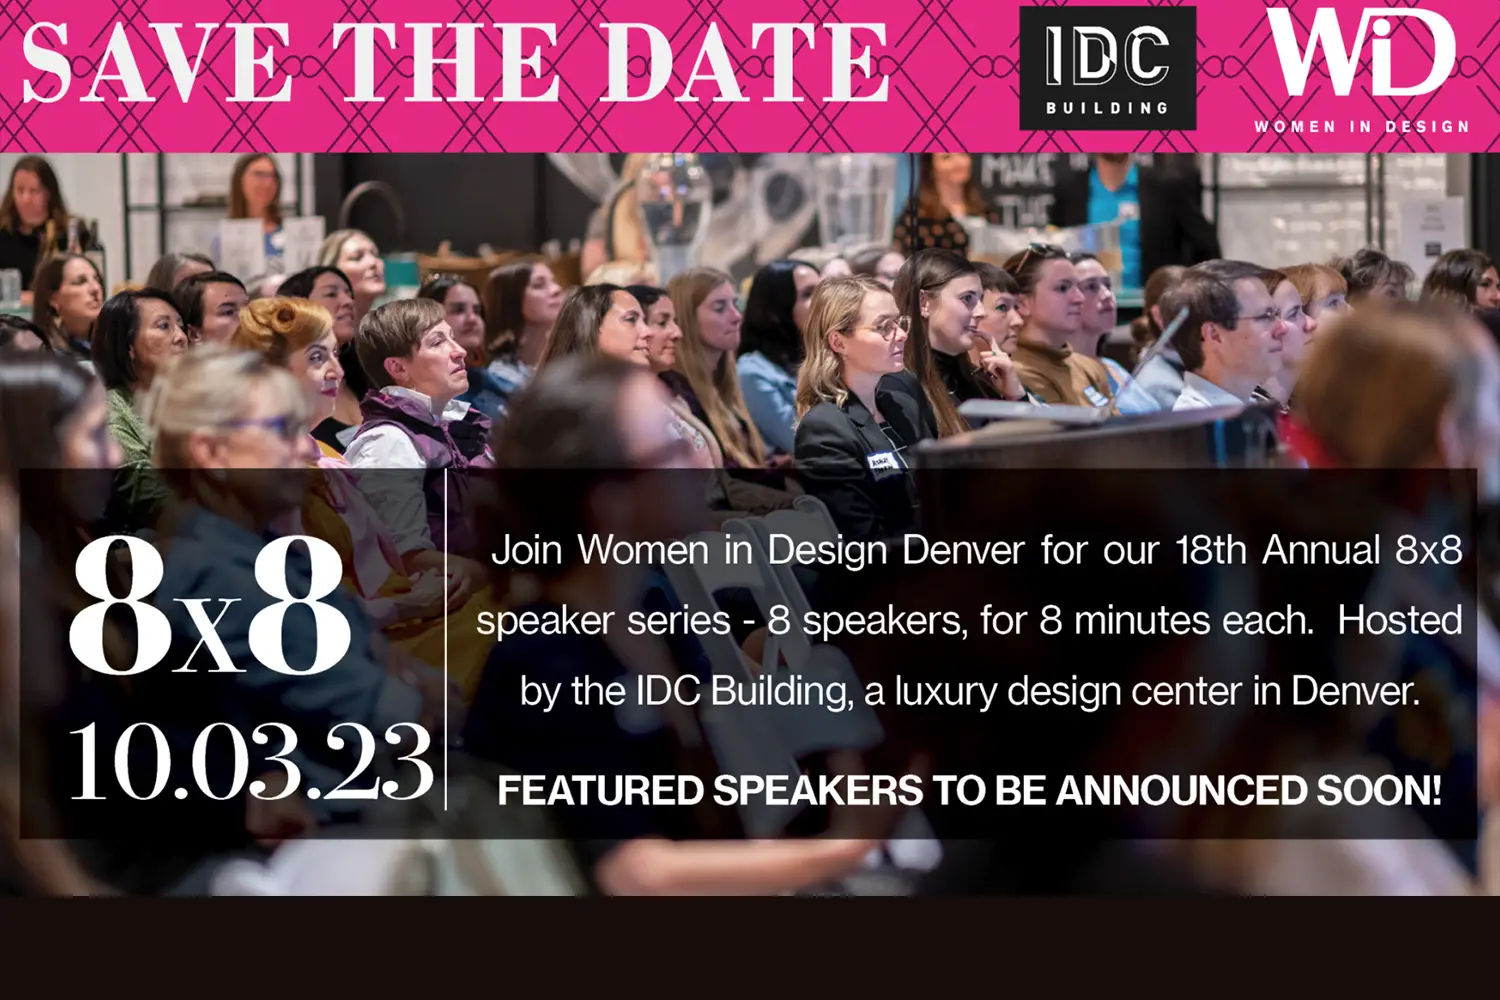 Women in Design 8x8 Speakers Series